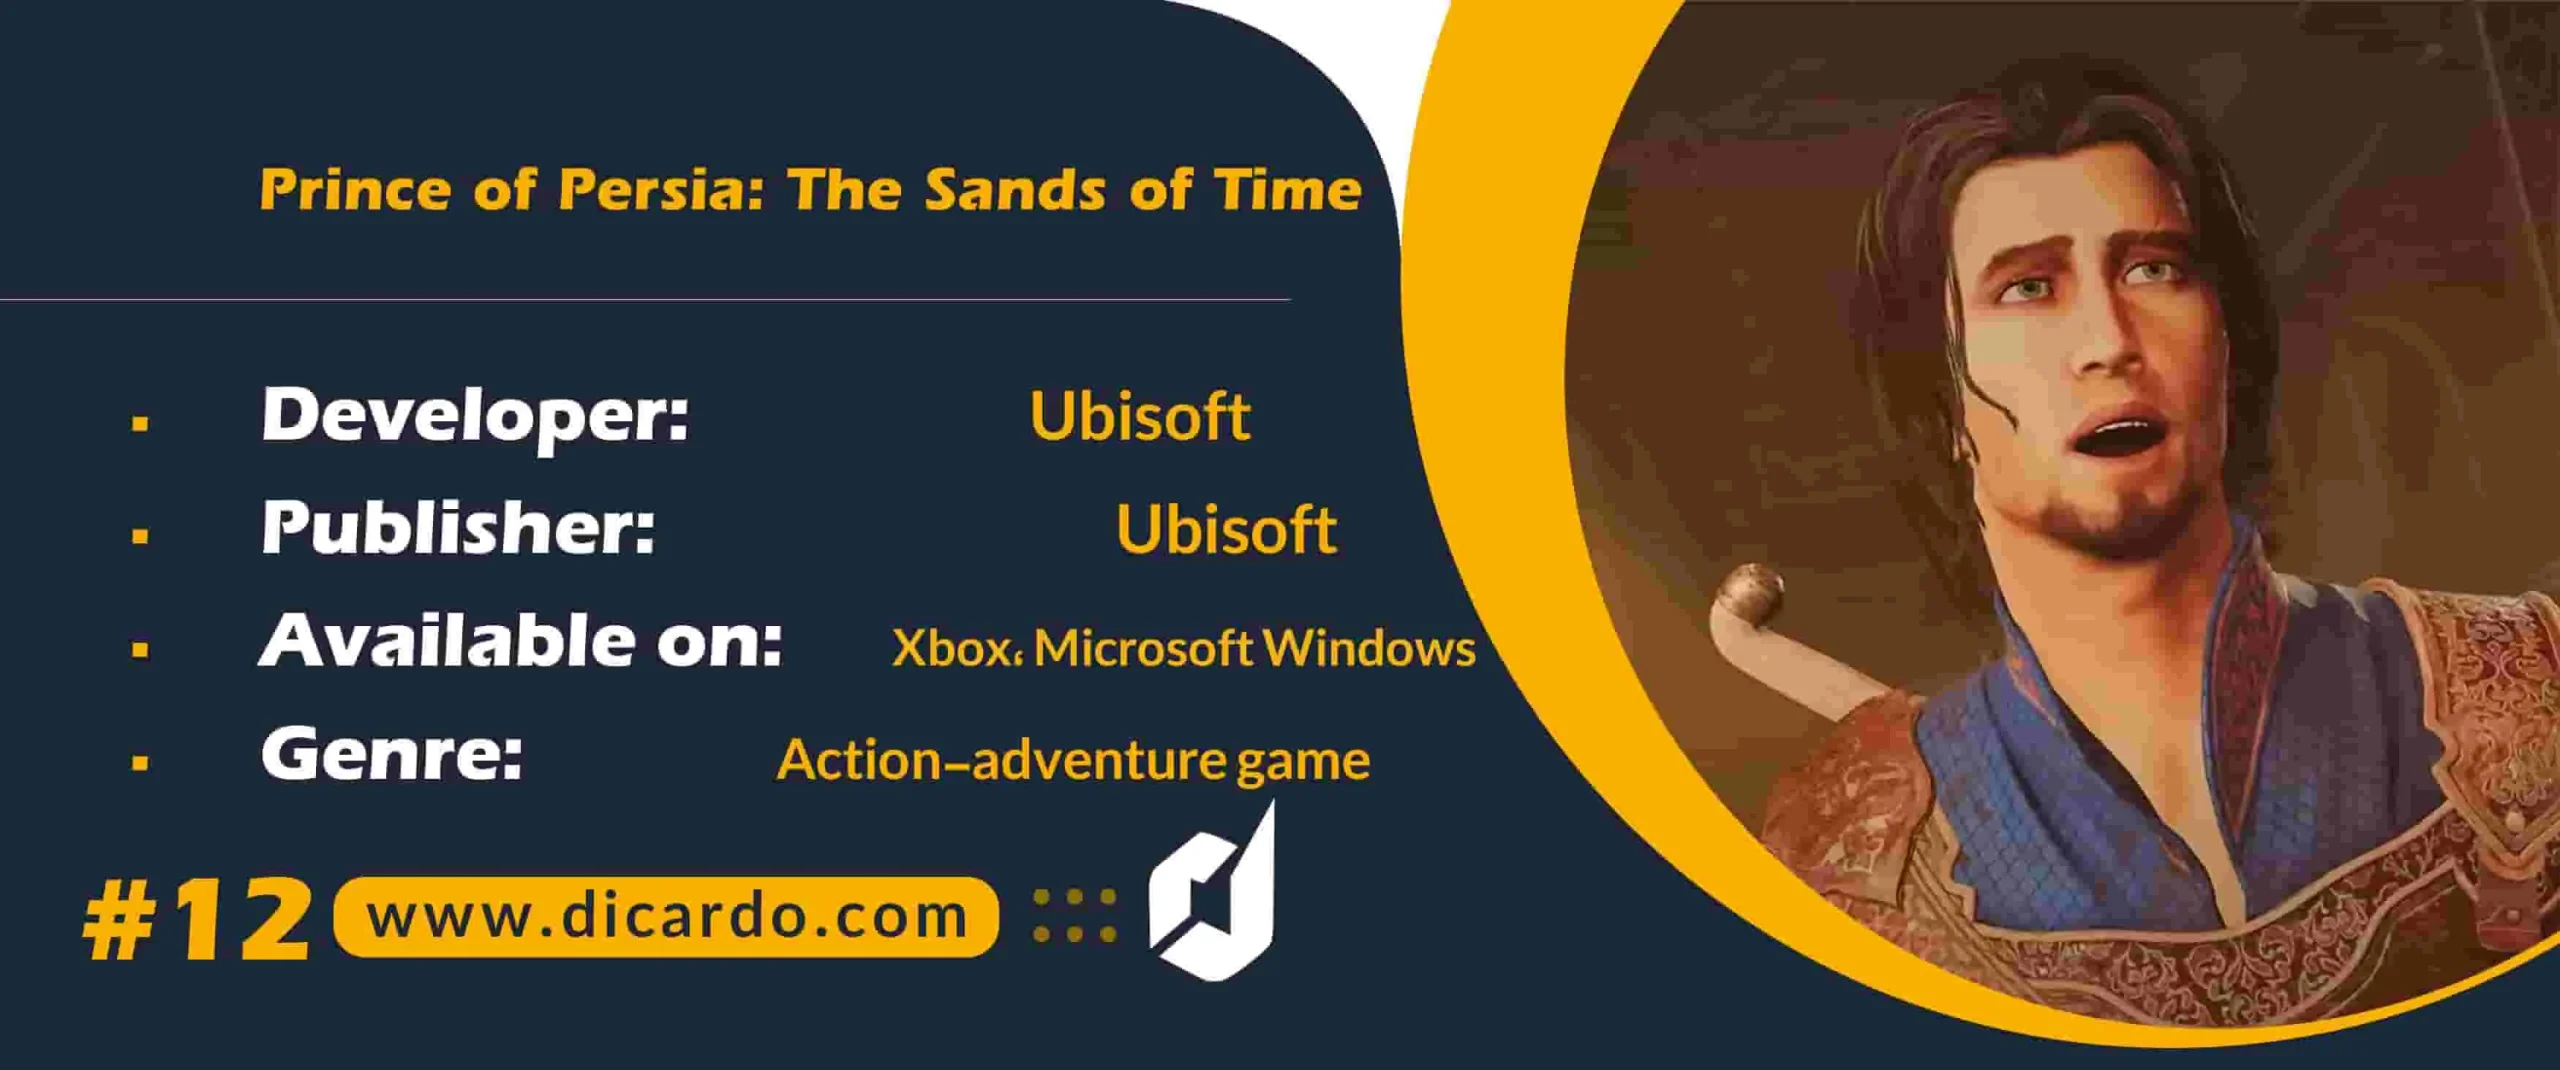 #12 پرینس آو پرشیا د ساندز آو تایم Prince of Persia: The Sands of Time